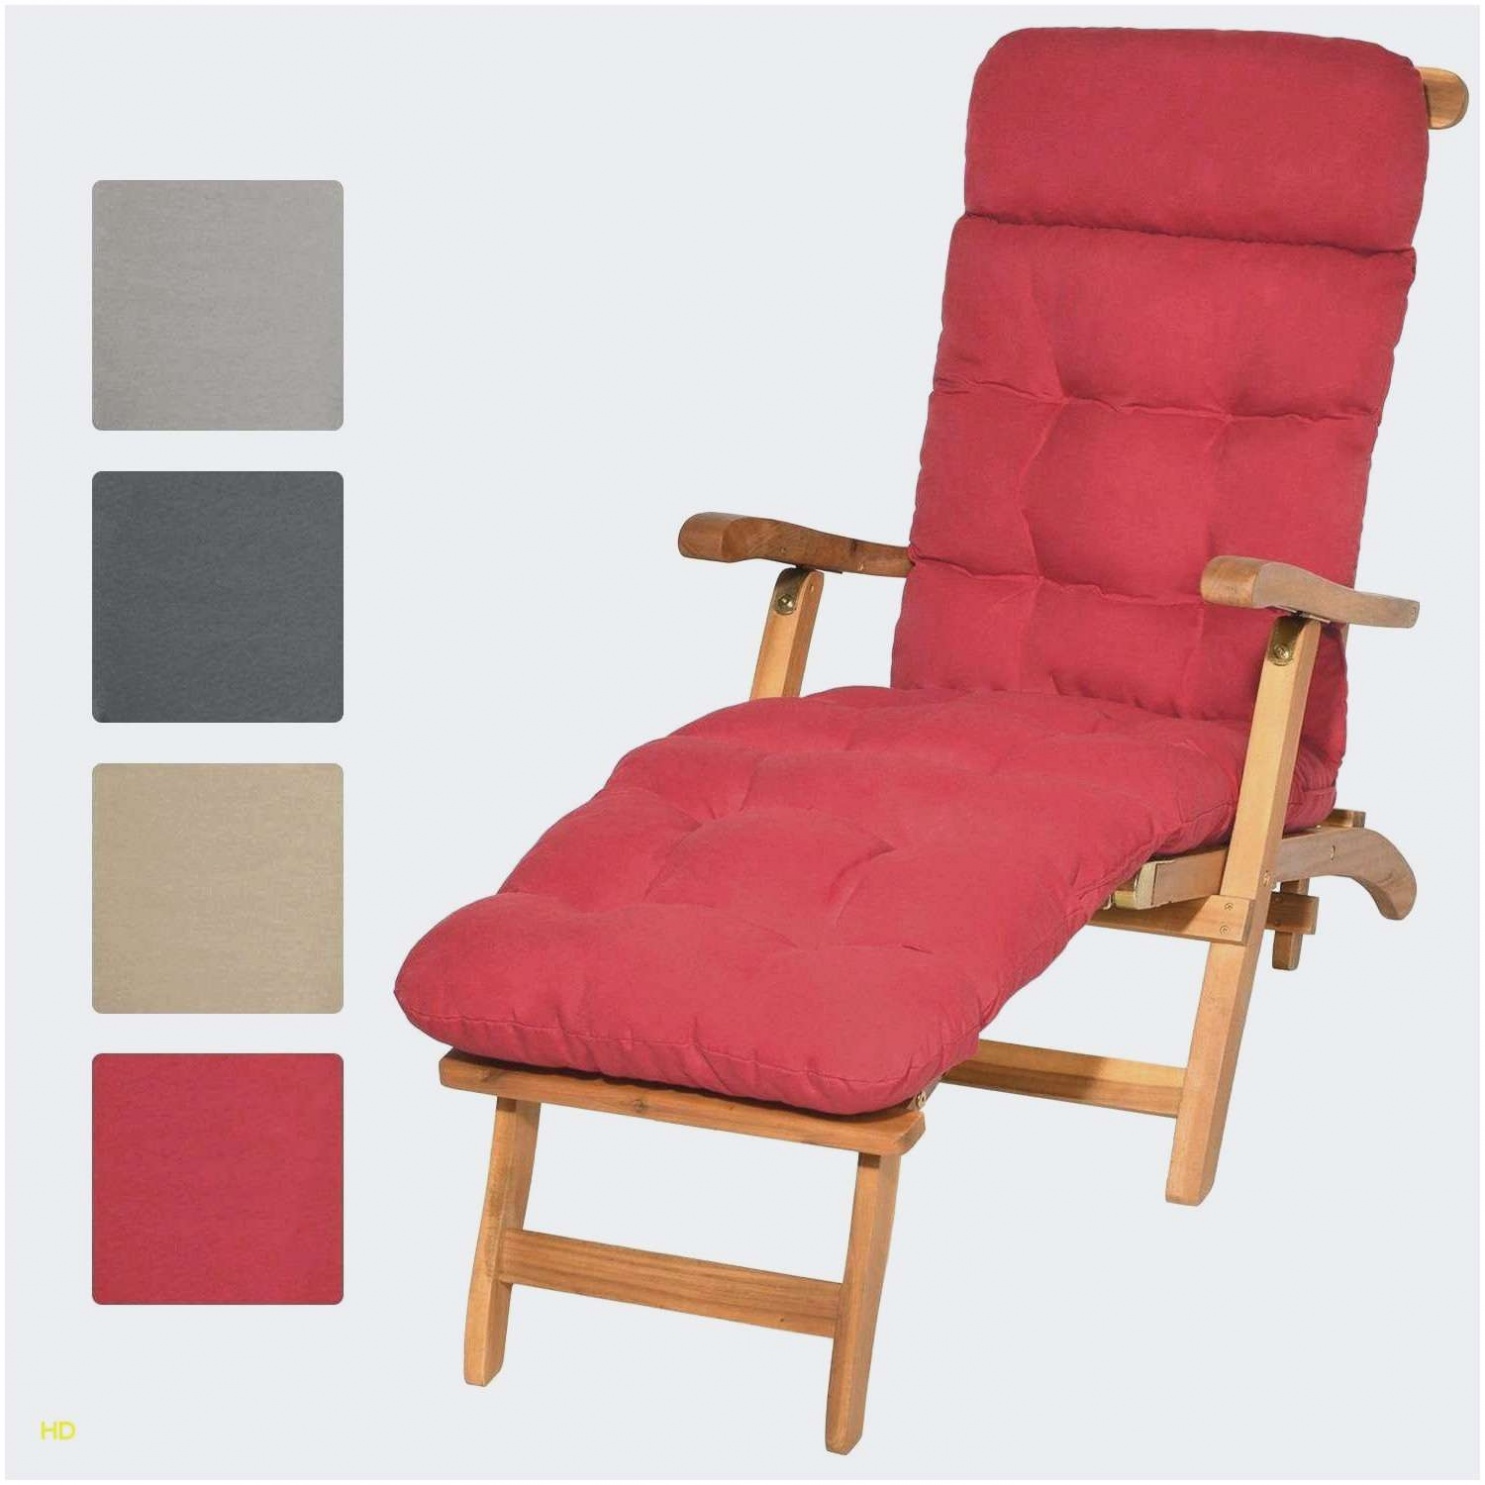 nouveau 24 luxe fauteuil rond jardin pour selection fauteuil liseuse fauteuil rond jardin of fauteuil rond jardin 1